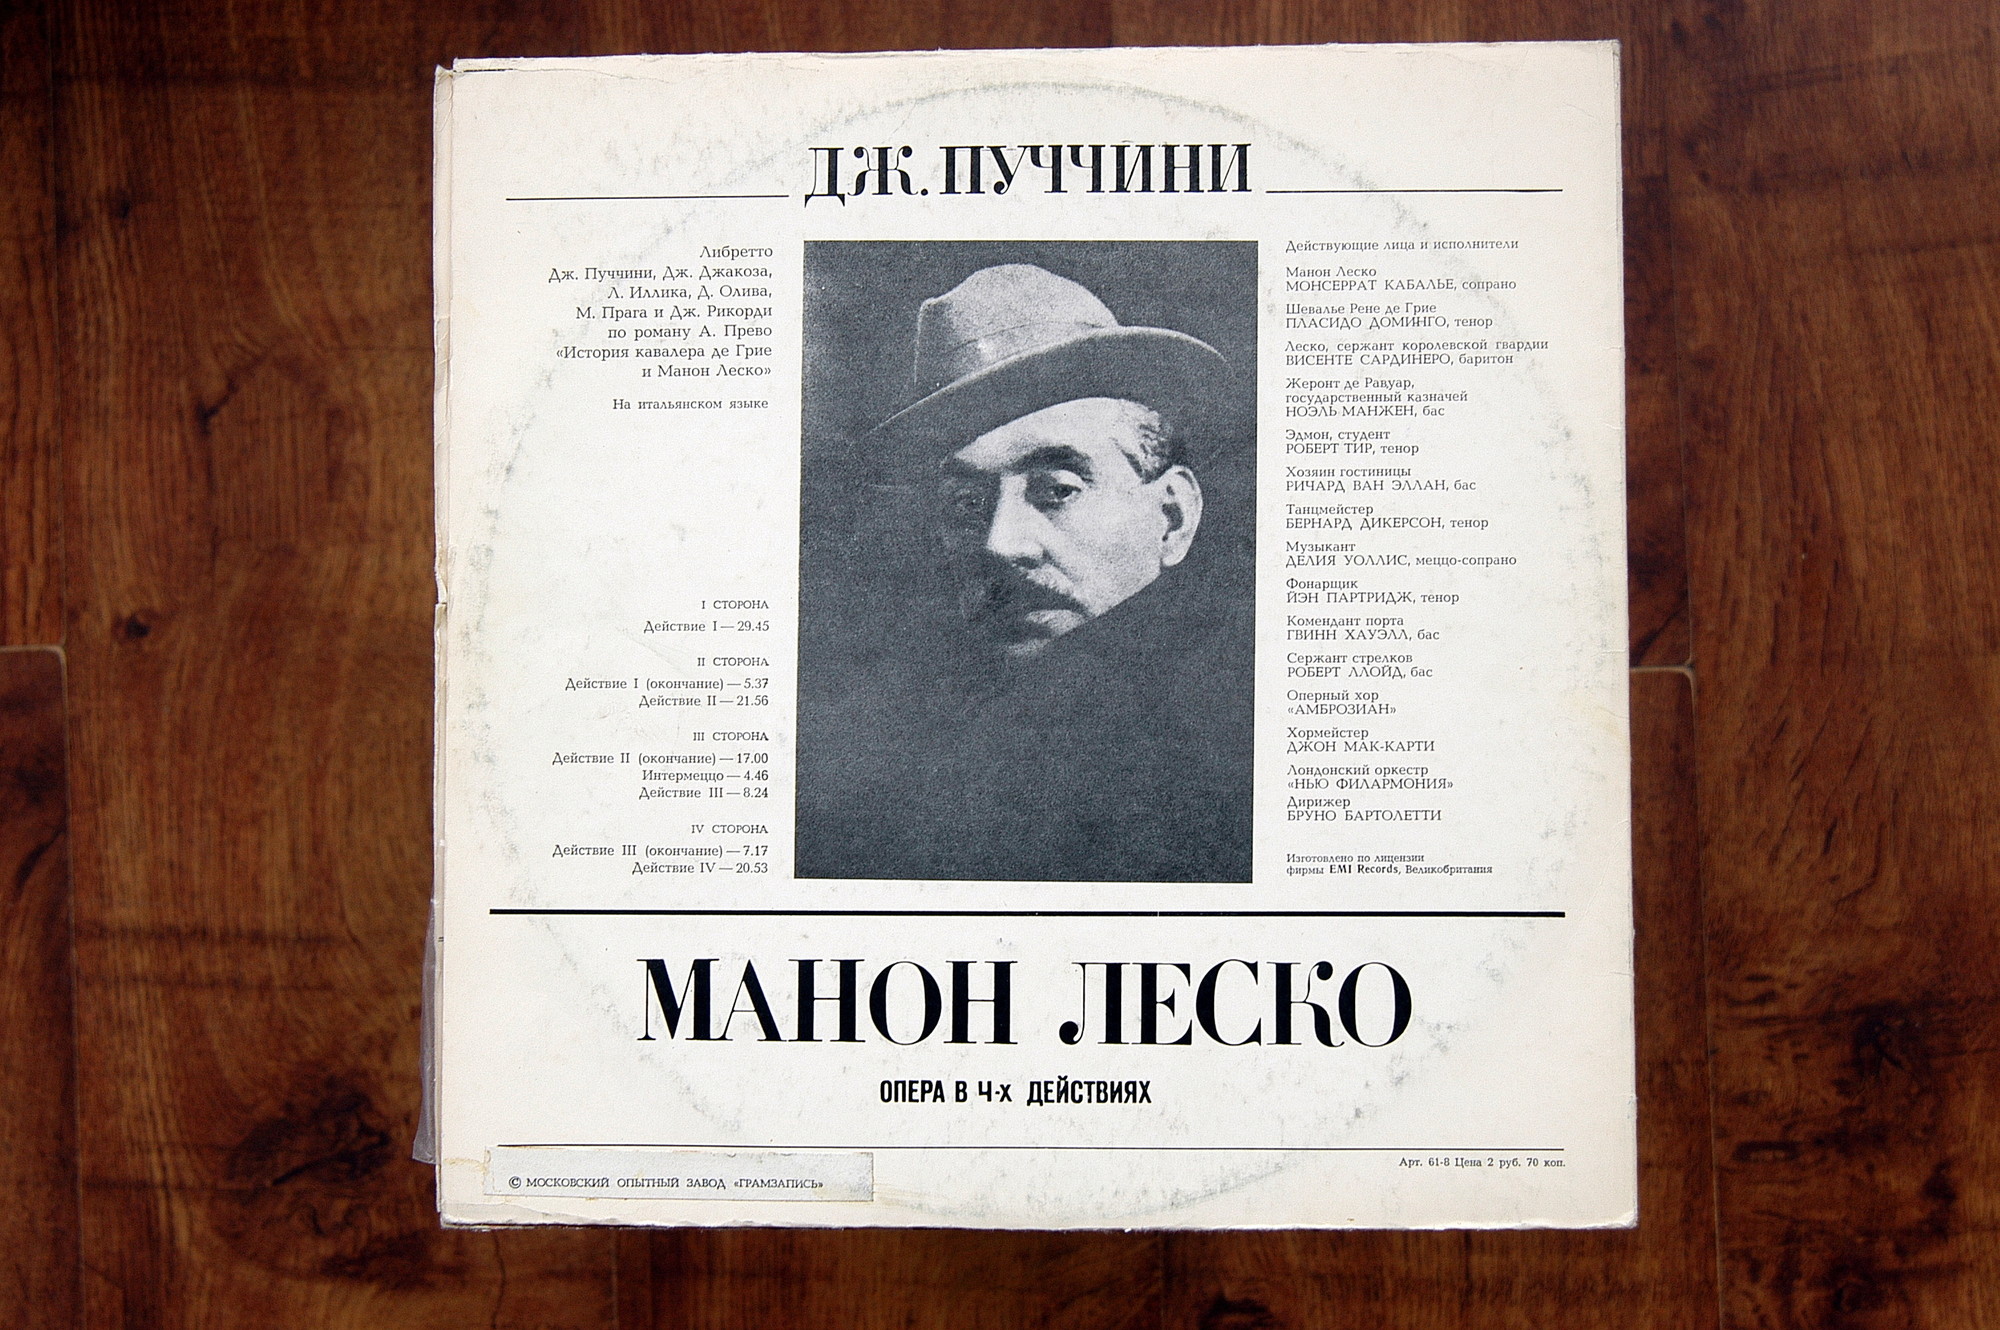 Дж. Пуччини: Опера "Манон Леско"